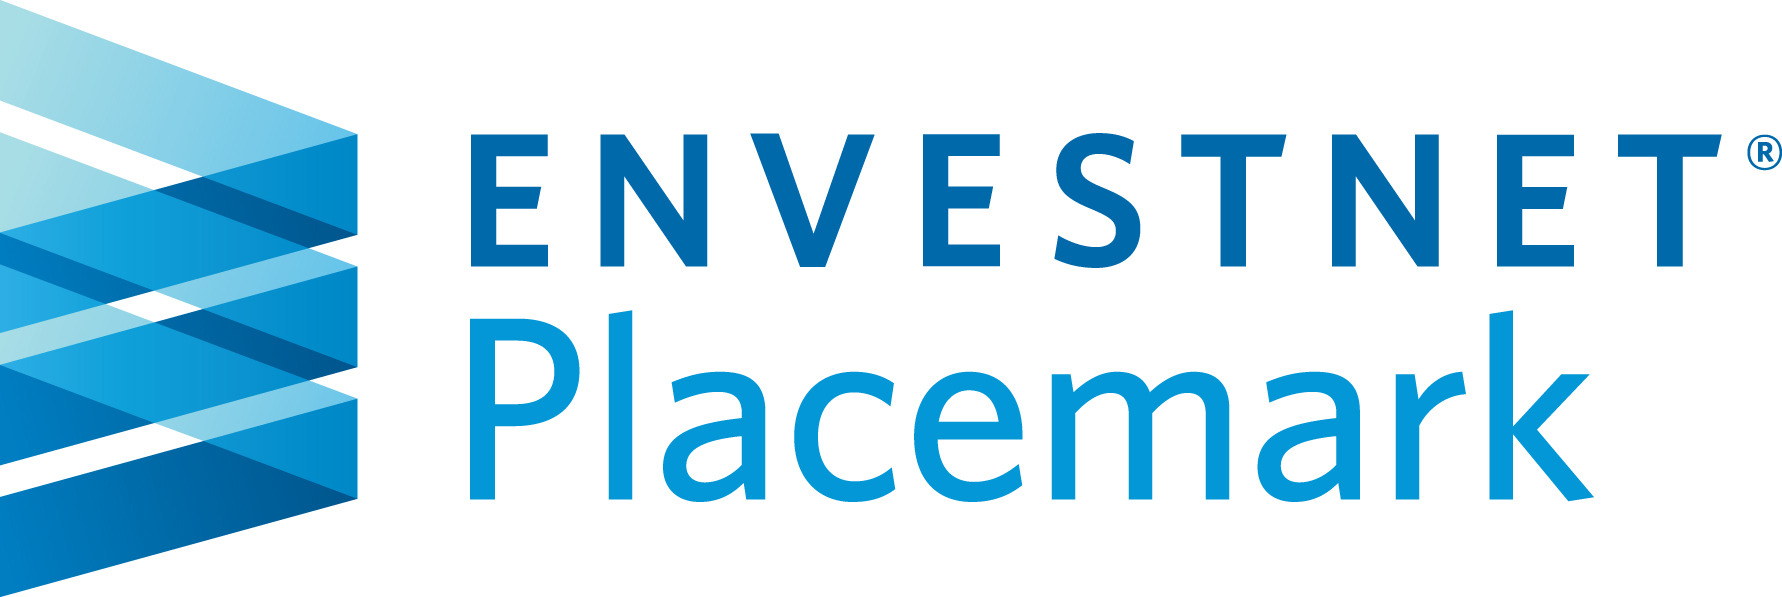 Envestnet-Placemark-logo.jpg